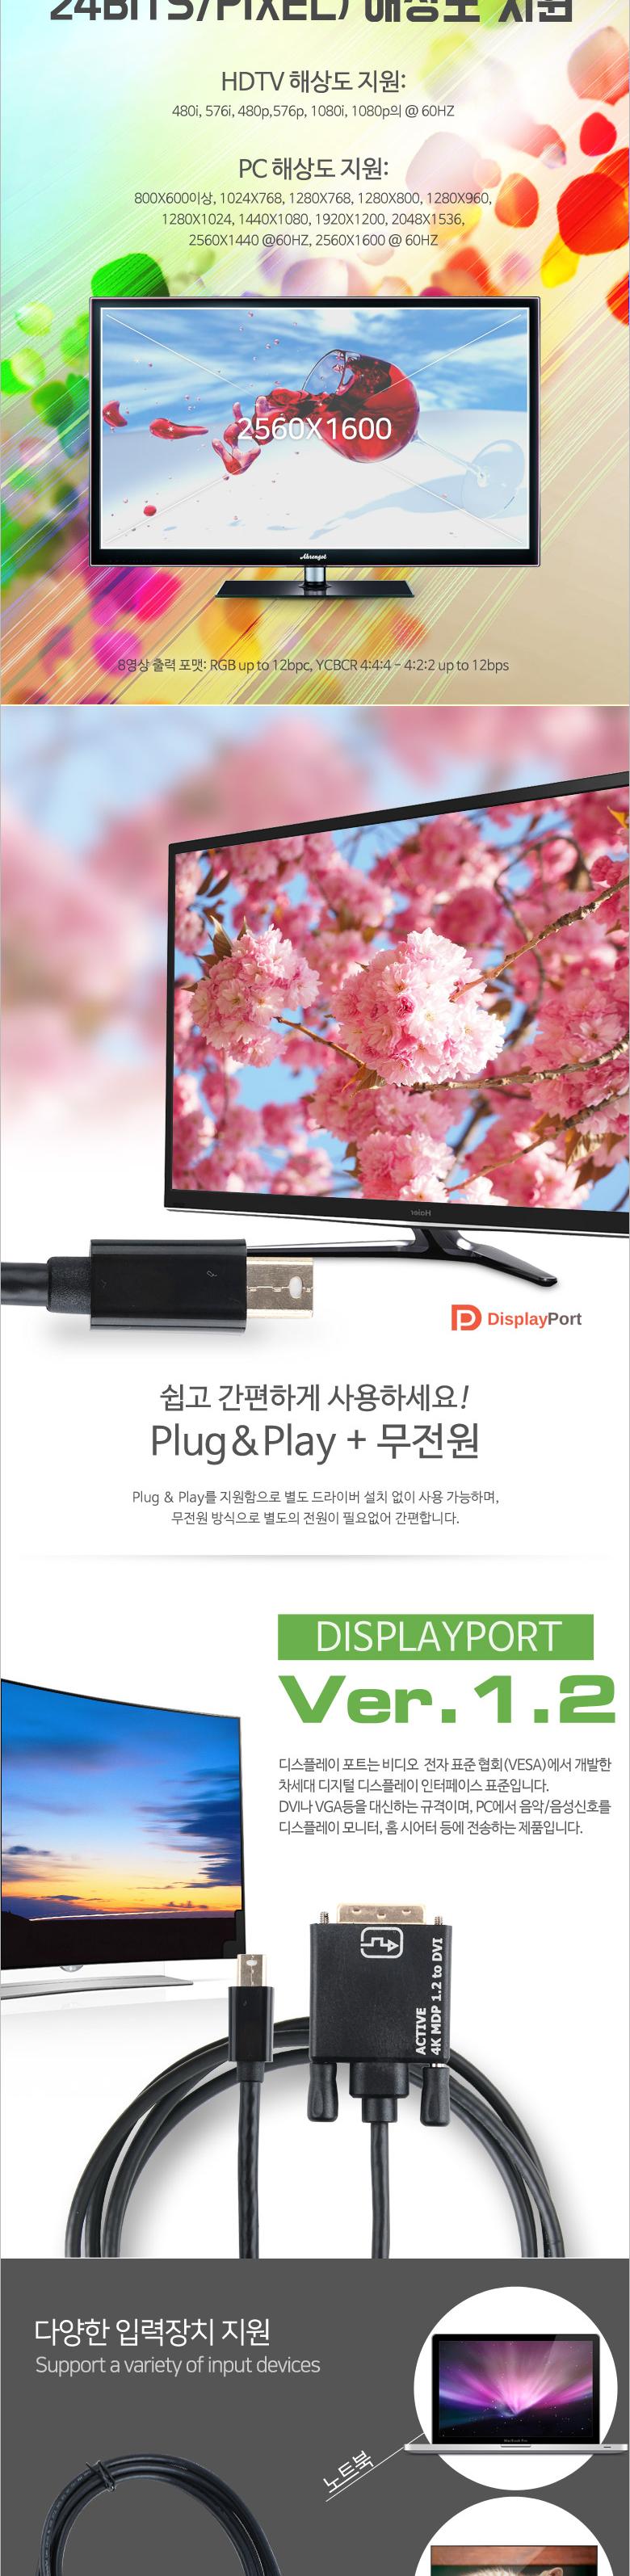 Coms ̴ ÷Ʈ to DVI ȯ ̺ 2M  4K 60Hz UHD Mini DP to DVI DisplayPort ÷Ʈ DVI̺ 2M̺ DVIȯ̺ Ϳ̺ ÷ƮDMI̺ HDػ̺ HDTV̺ ػ󵵿̺ ÷Ʈ̺